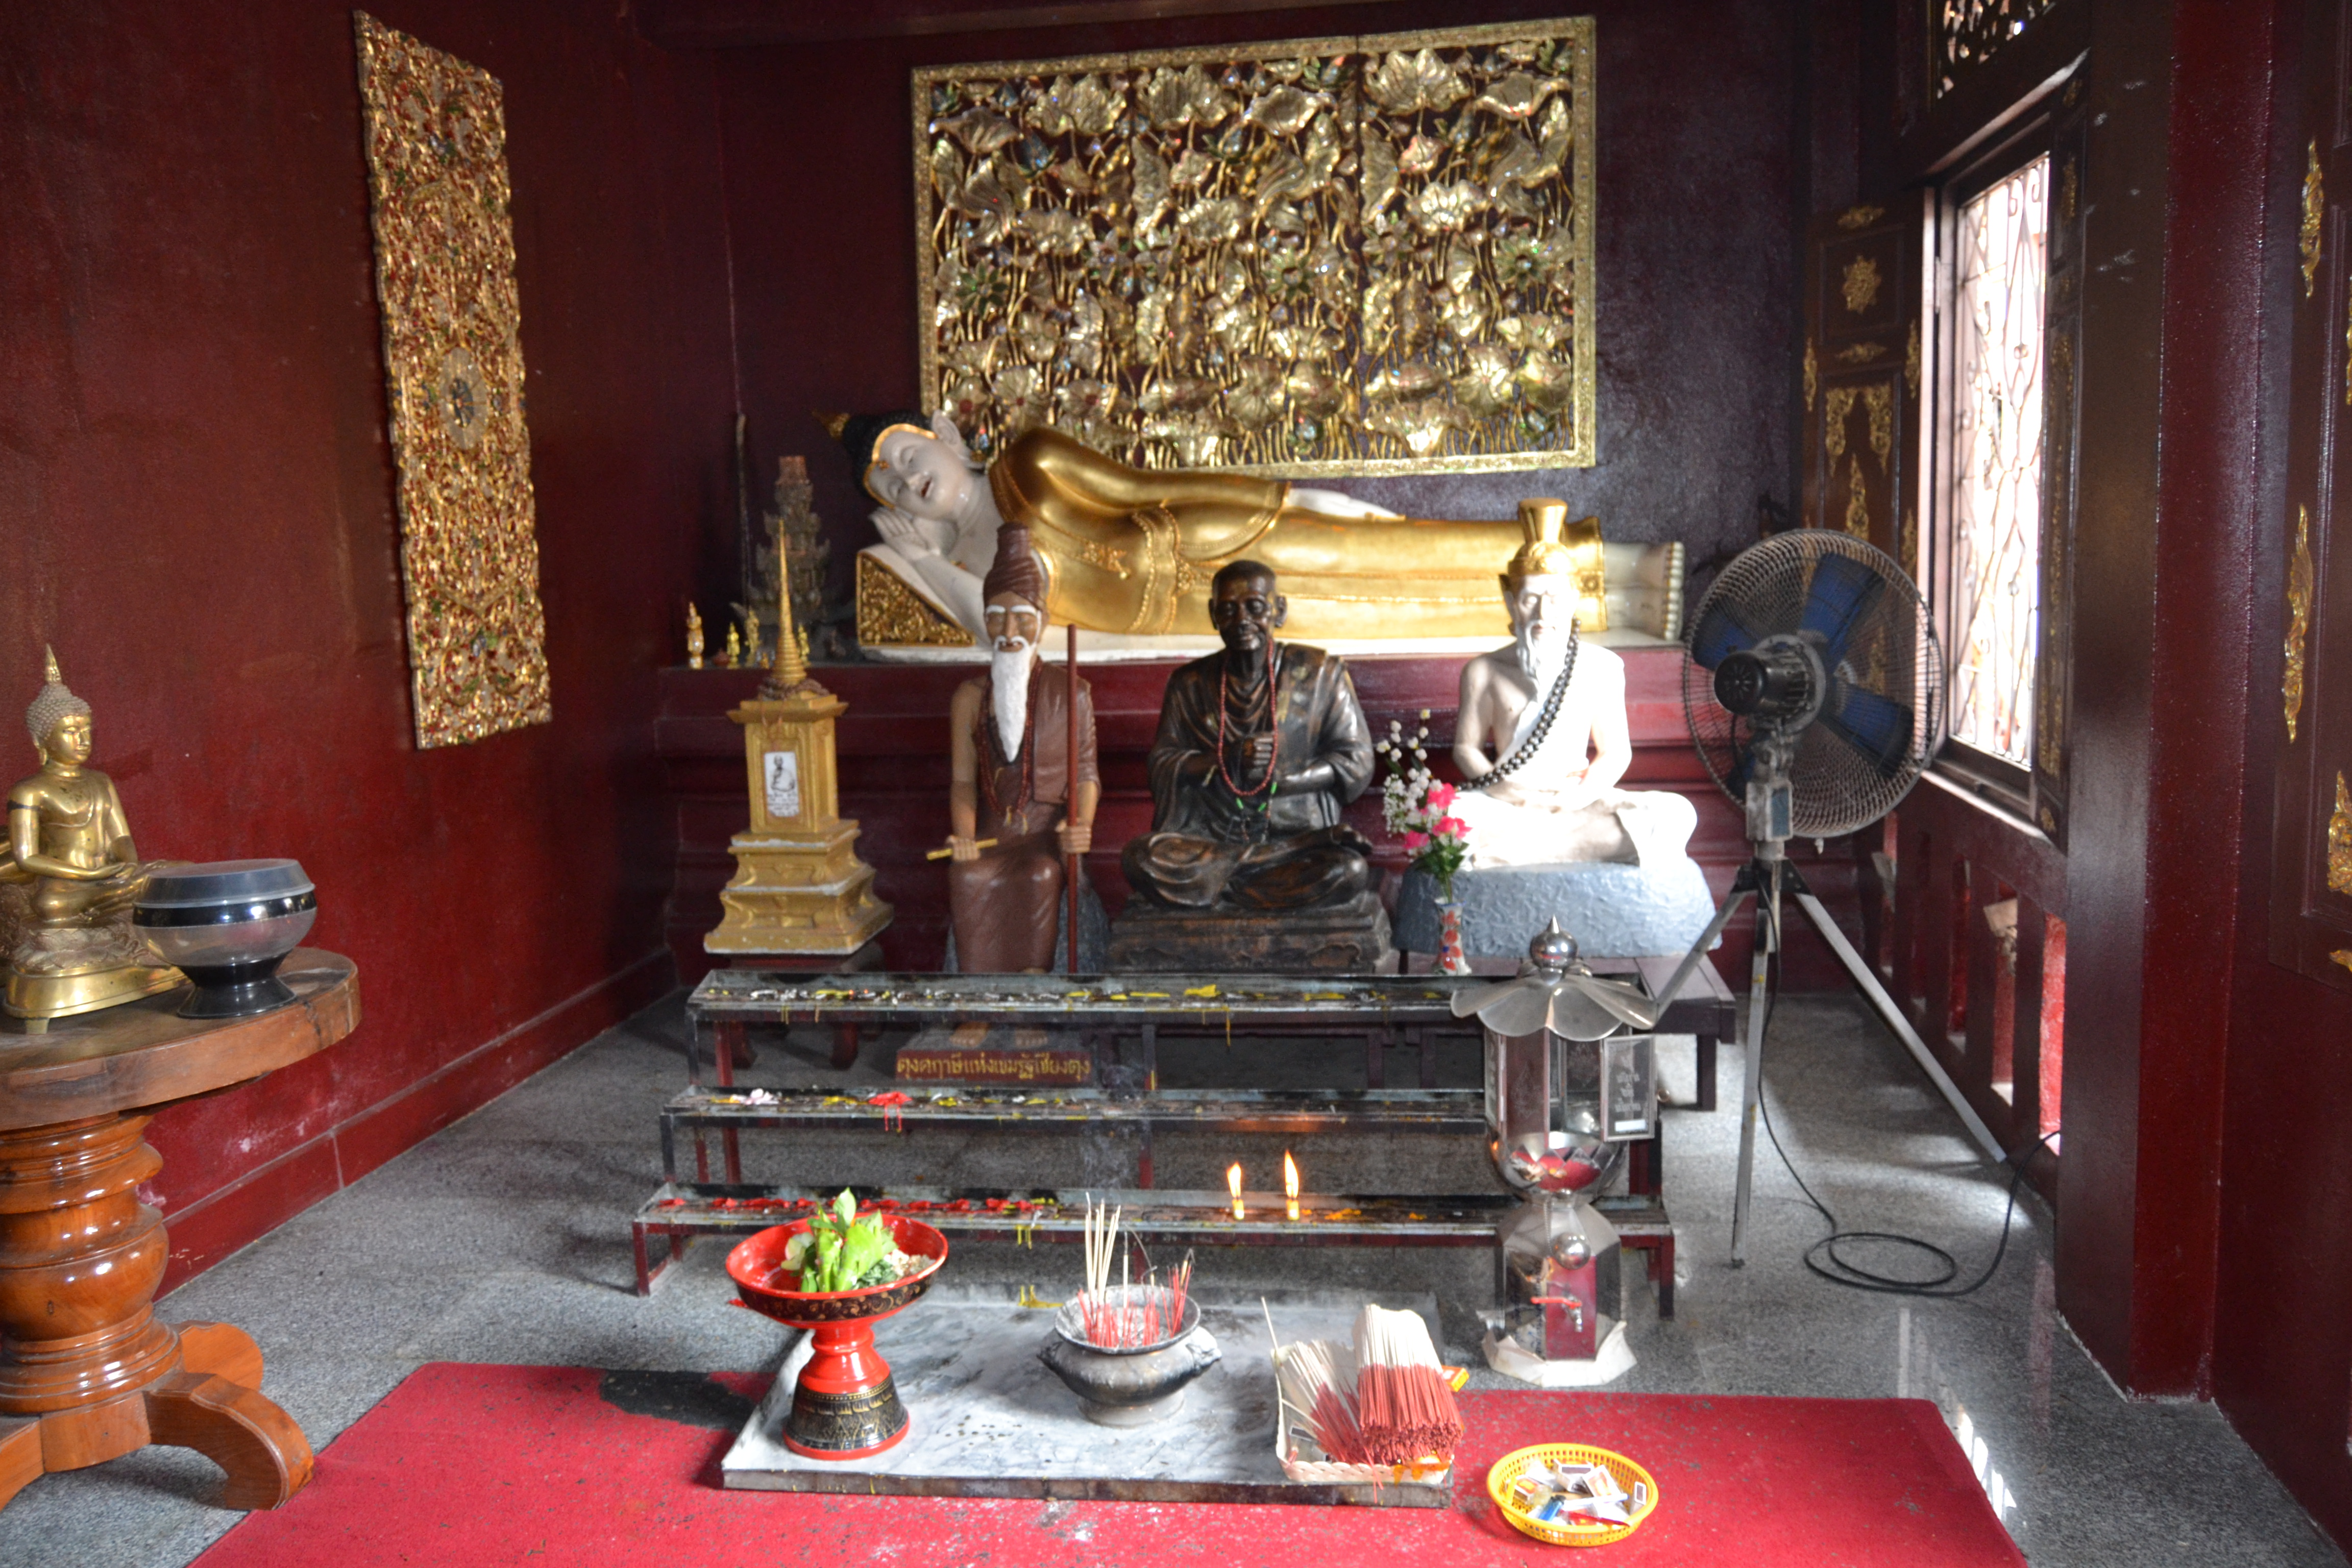 Wat Monthian, Chiang Mai, Tailandia